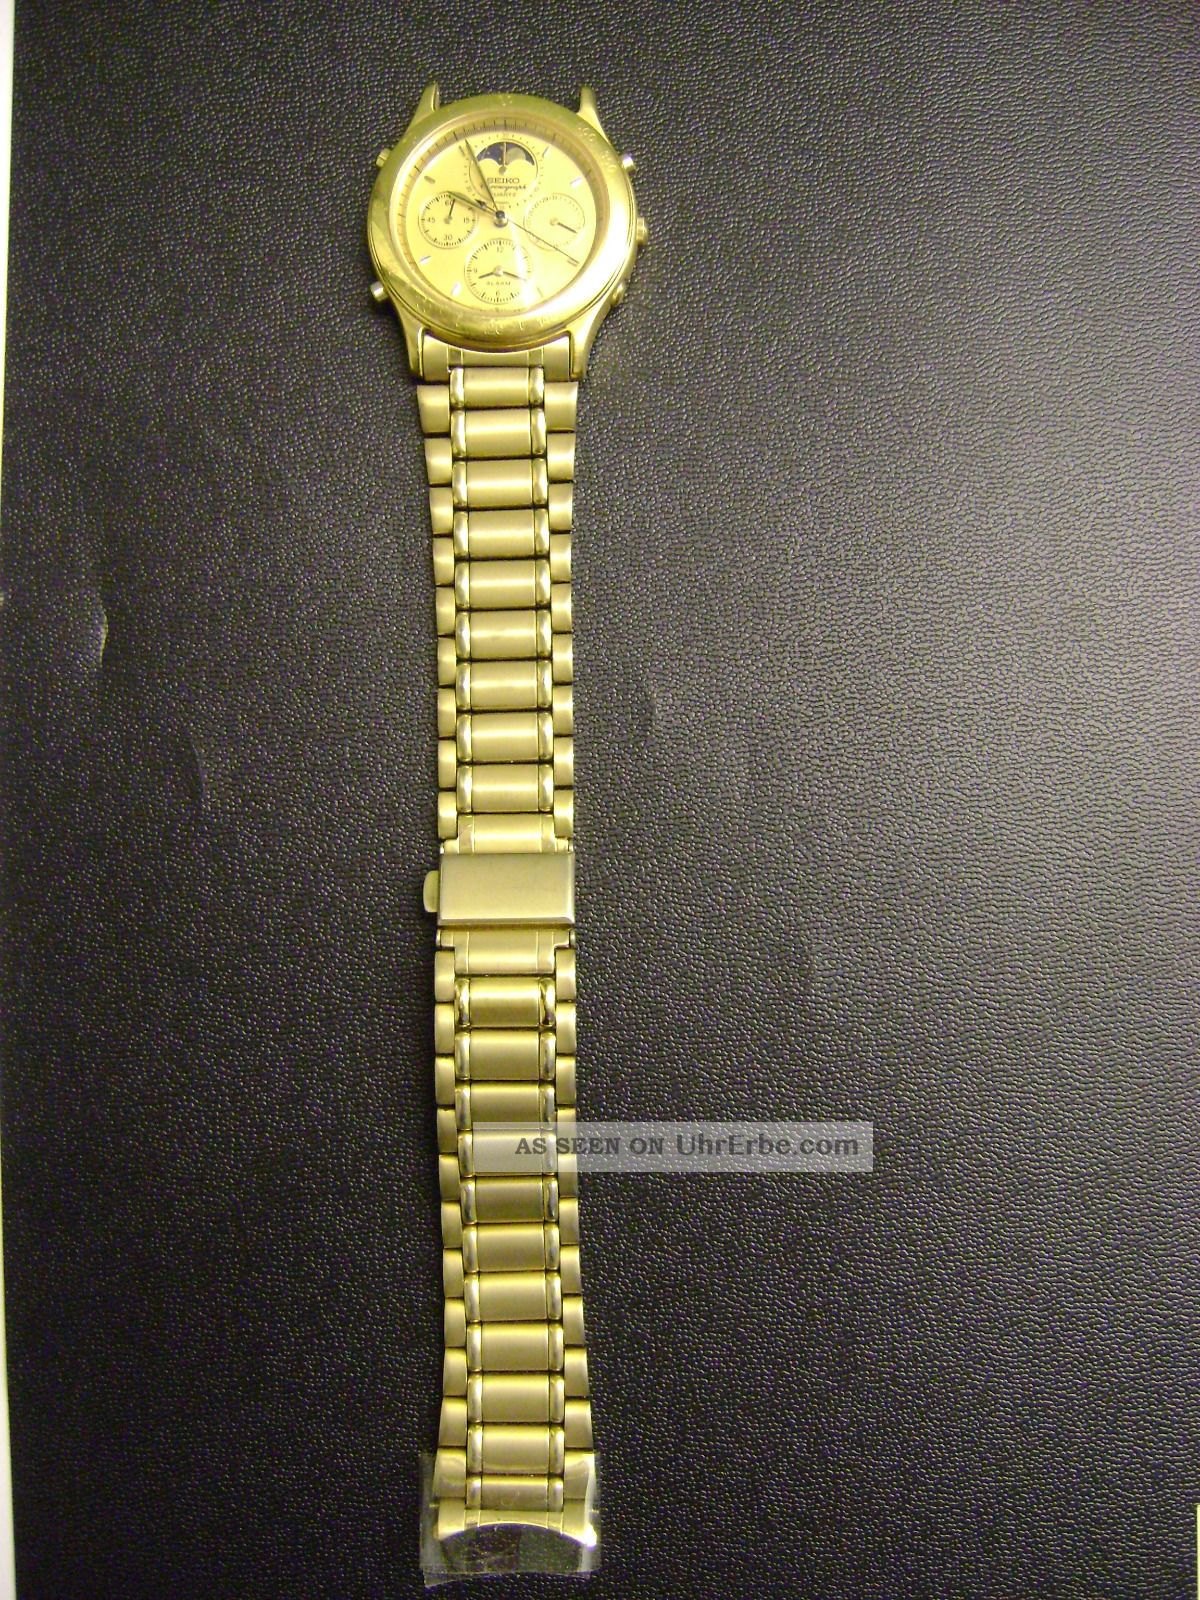 Seiko Chronograph Teilvergoldet Mit Mondphase